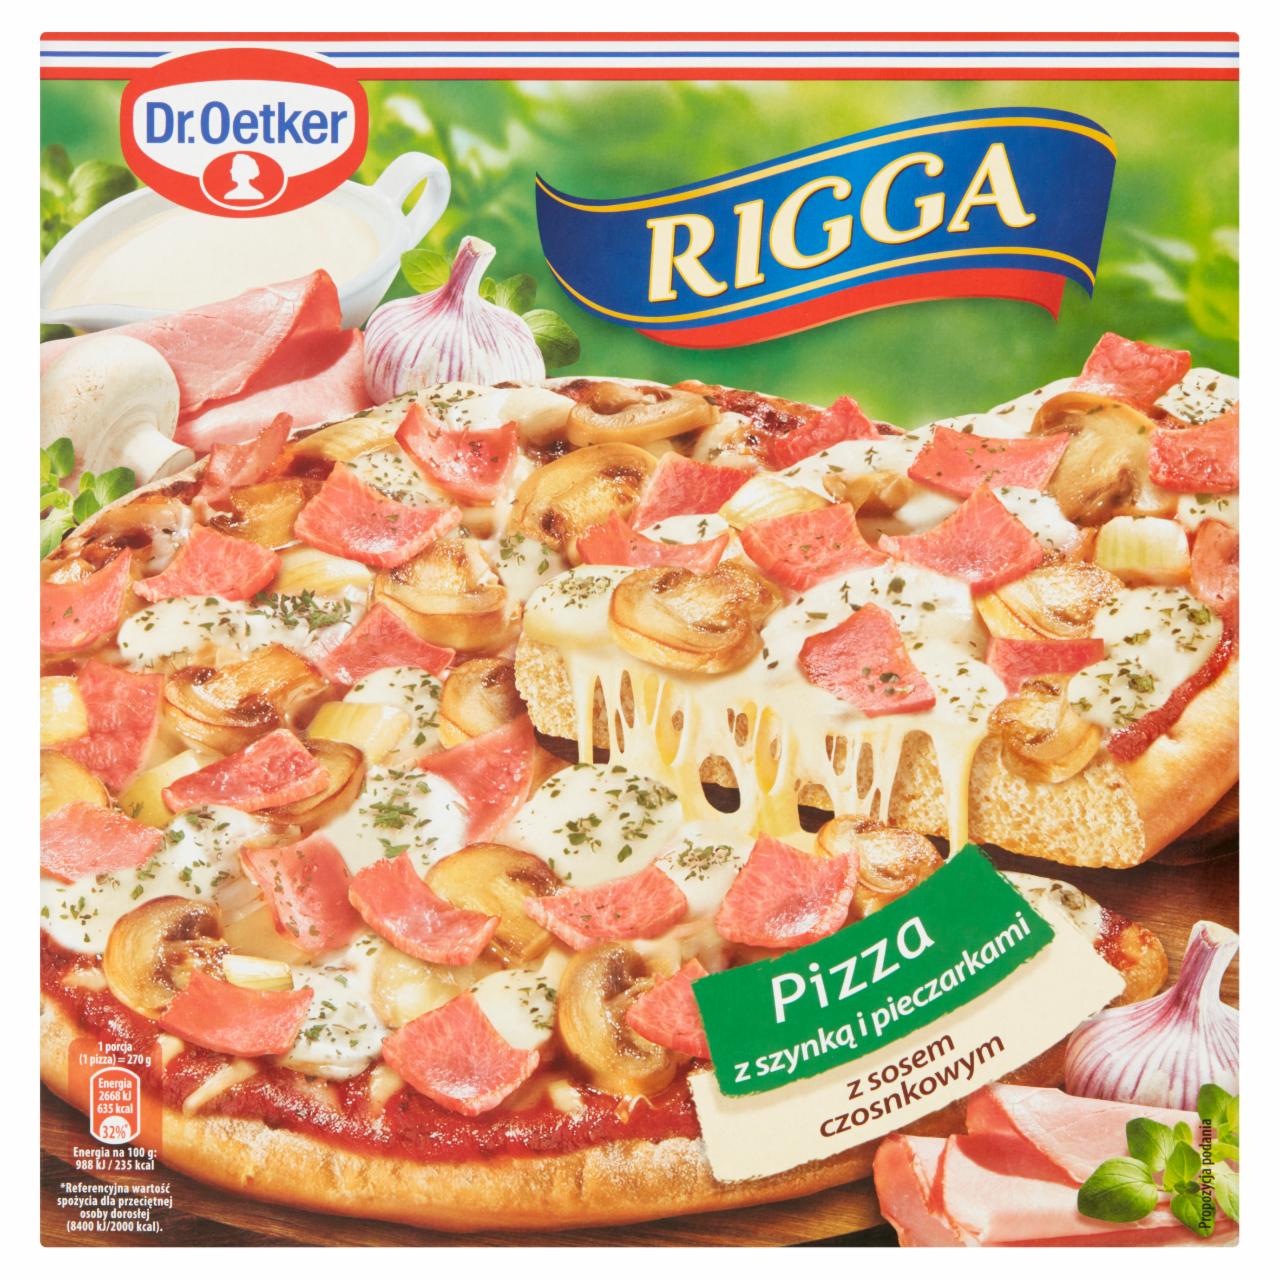 Zdjęcia - Dr. Oetker Rigga Pizza z szynką i pieczarkami z sosem czosnkowym 270 g